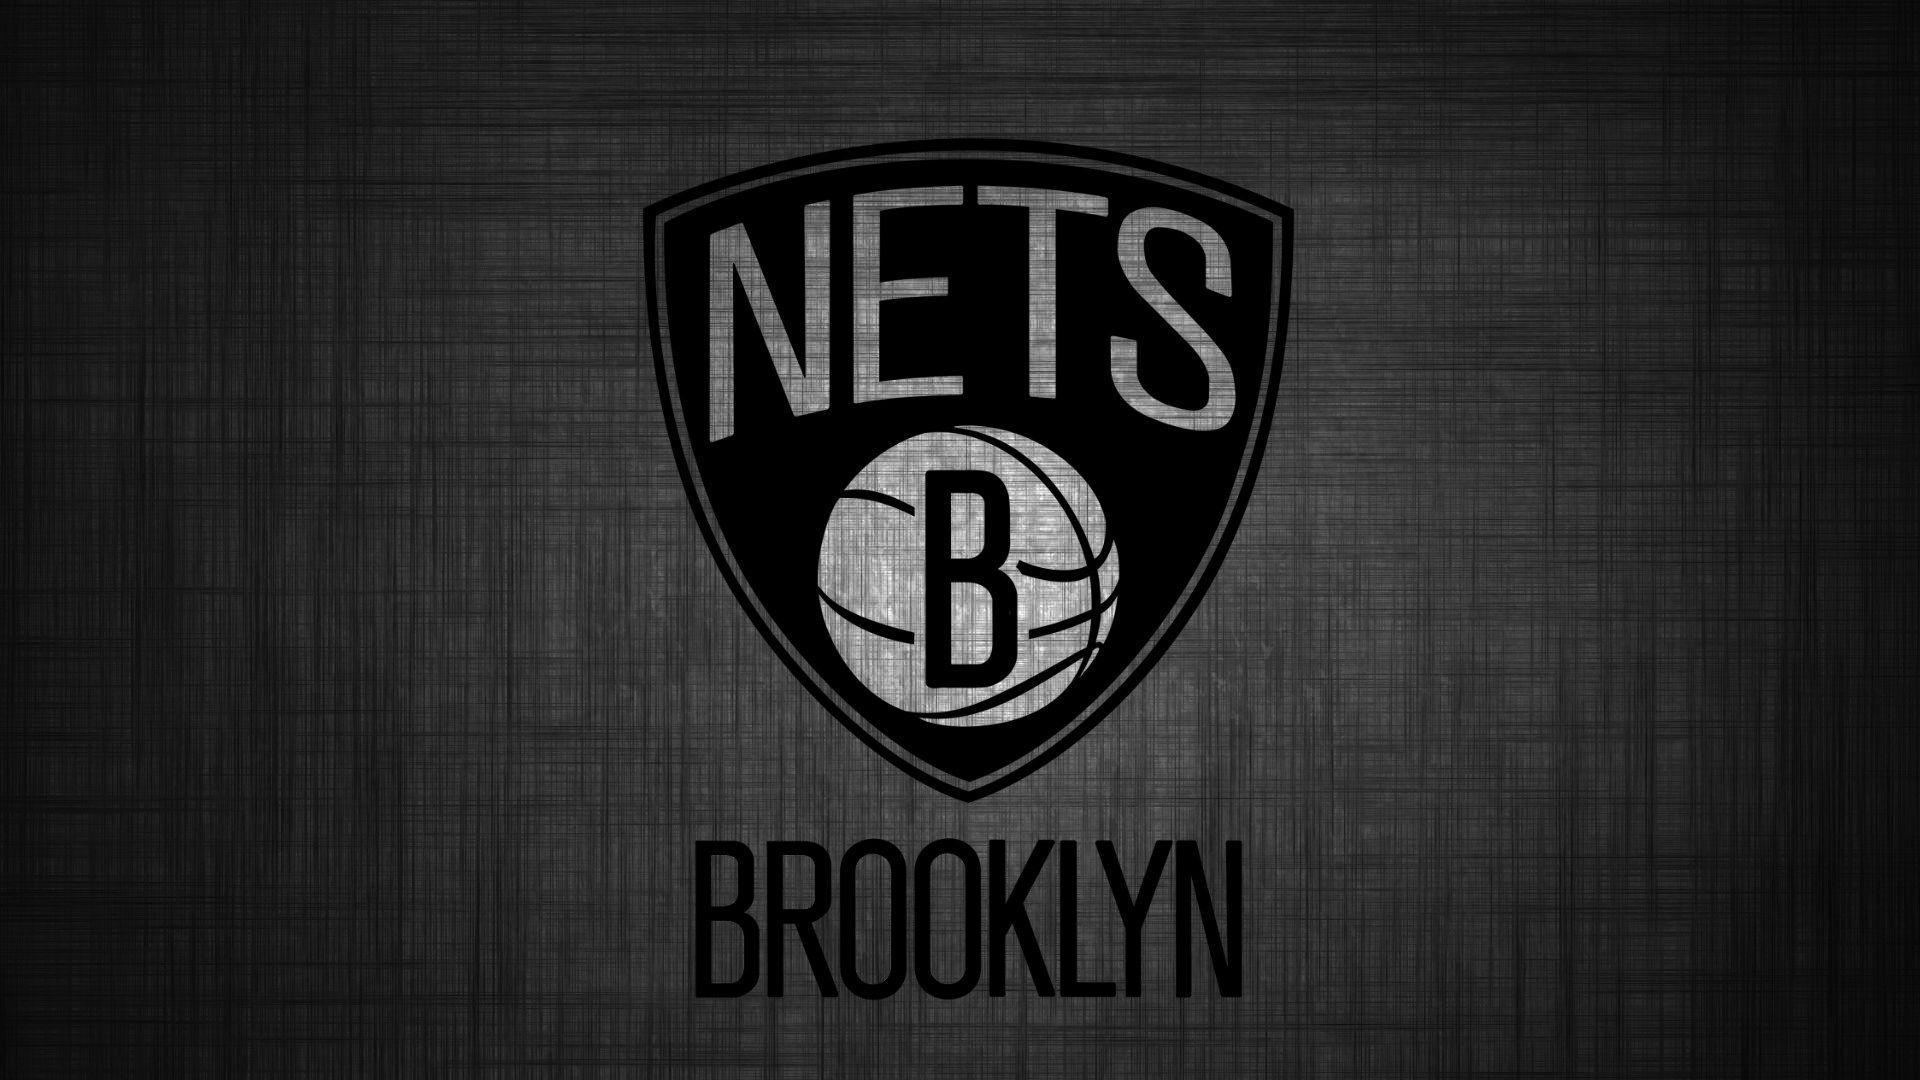 Brooklyn Nets Wallpaper by Yankesoffy on DeviantArt